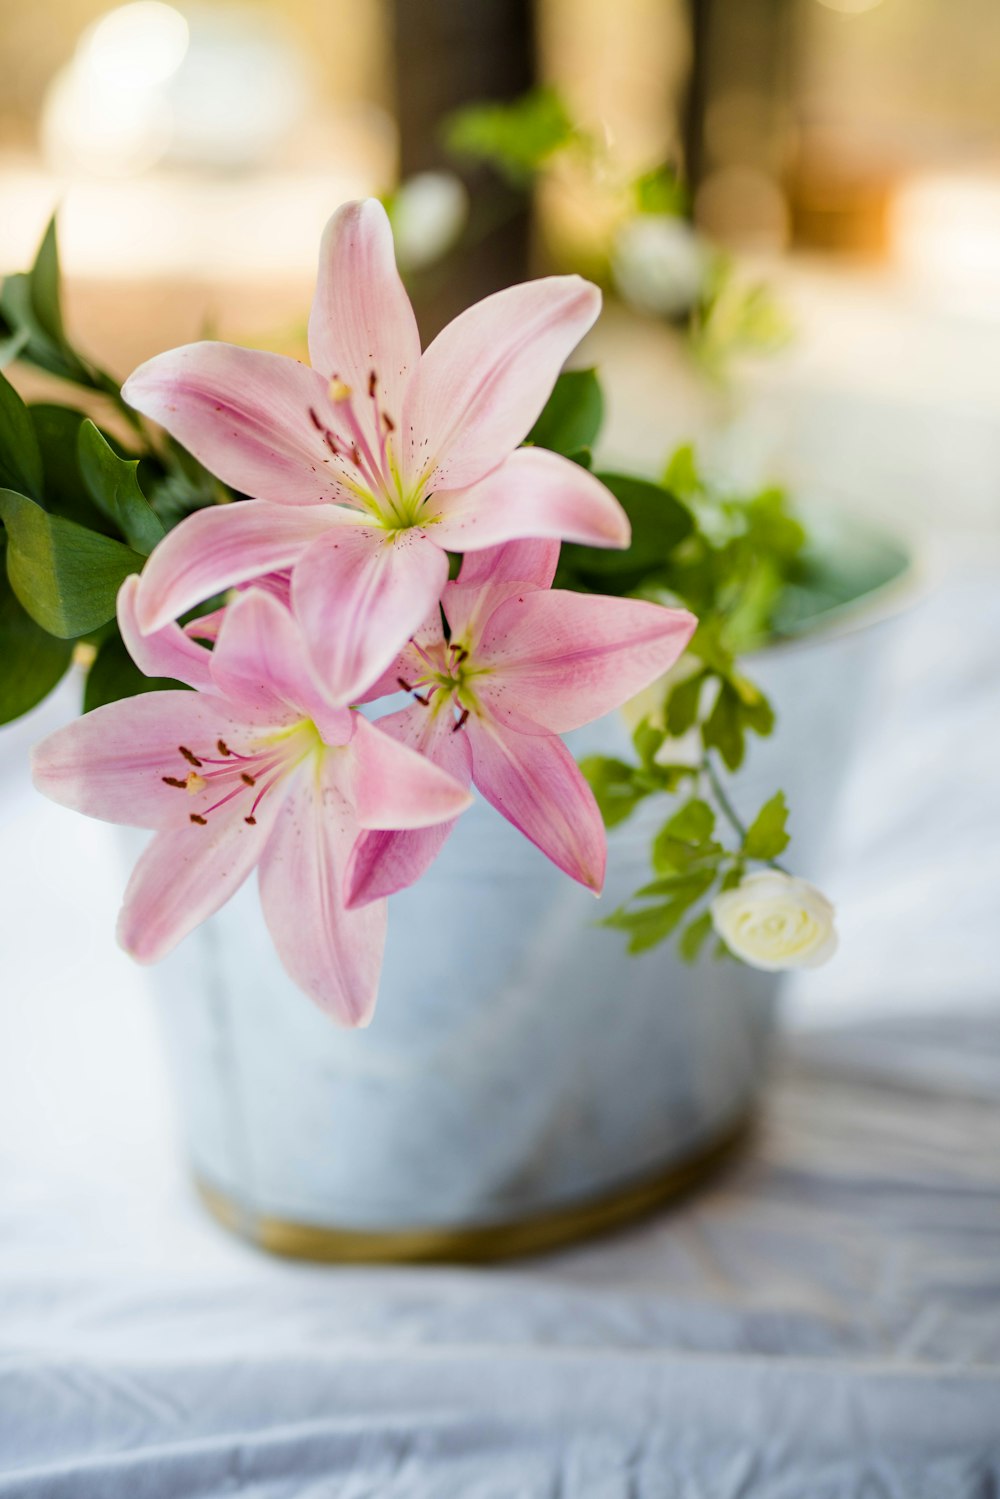 planta cor-de-rosa da flor no vaso branco